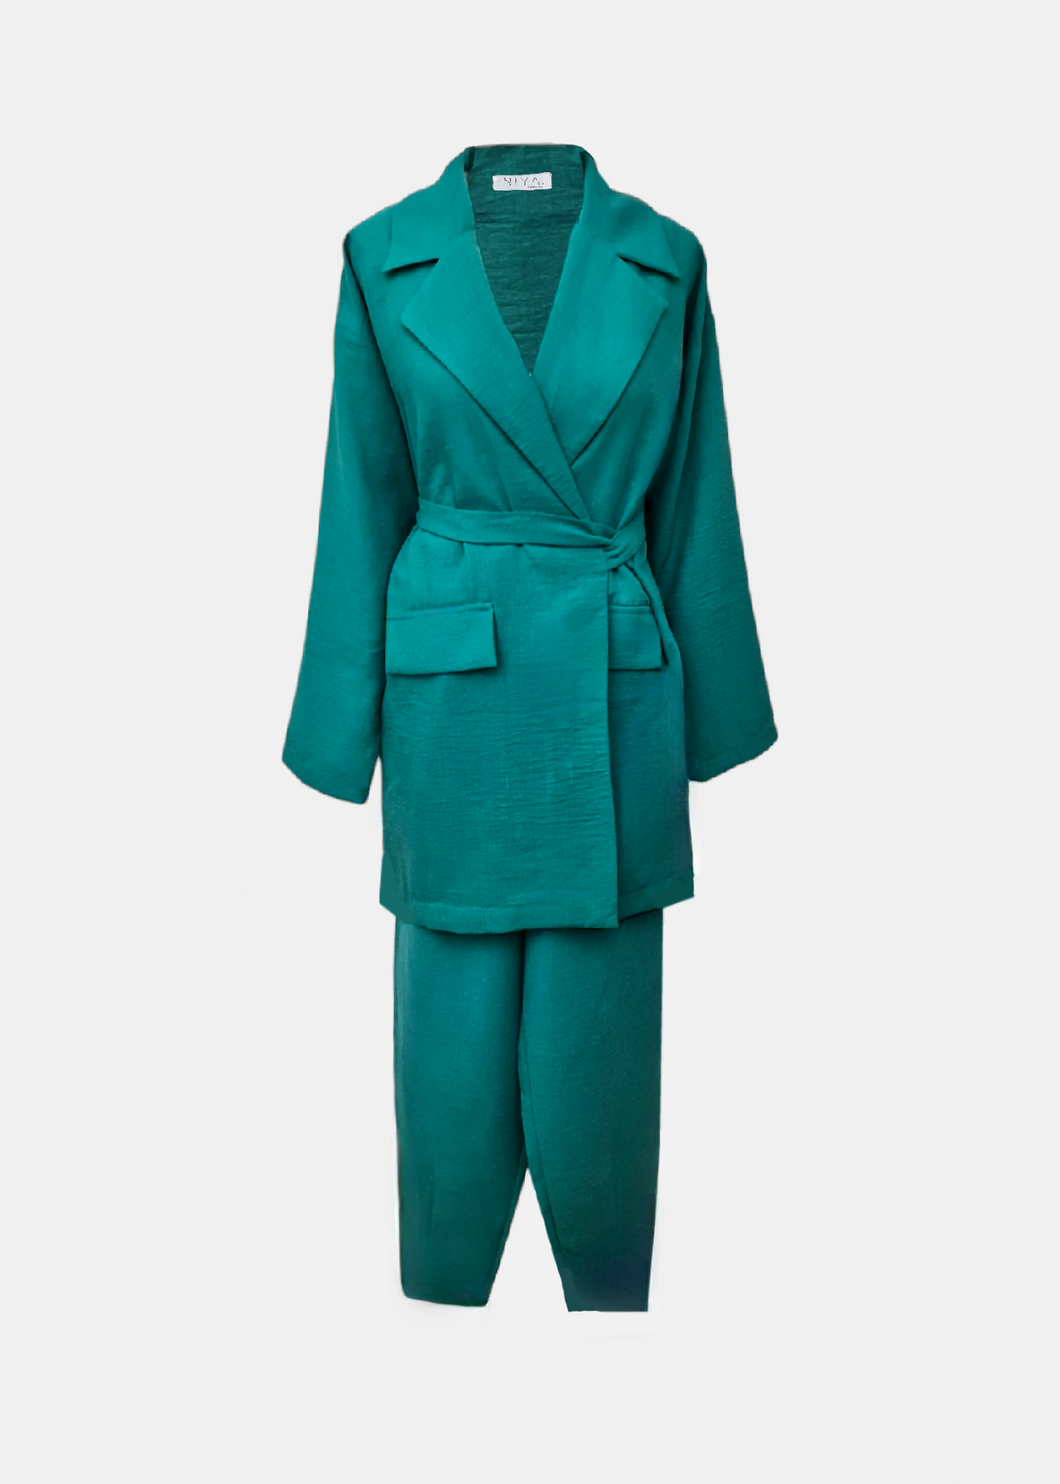 Ensemble blazer & pantalon en lin Vert turquoise